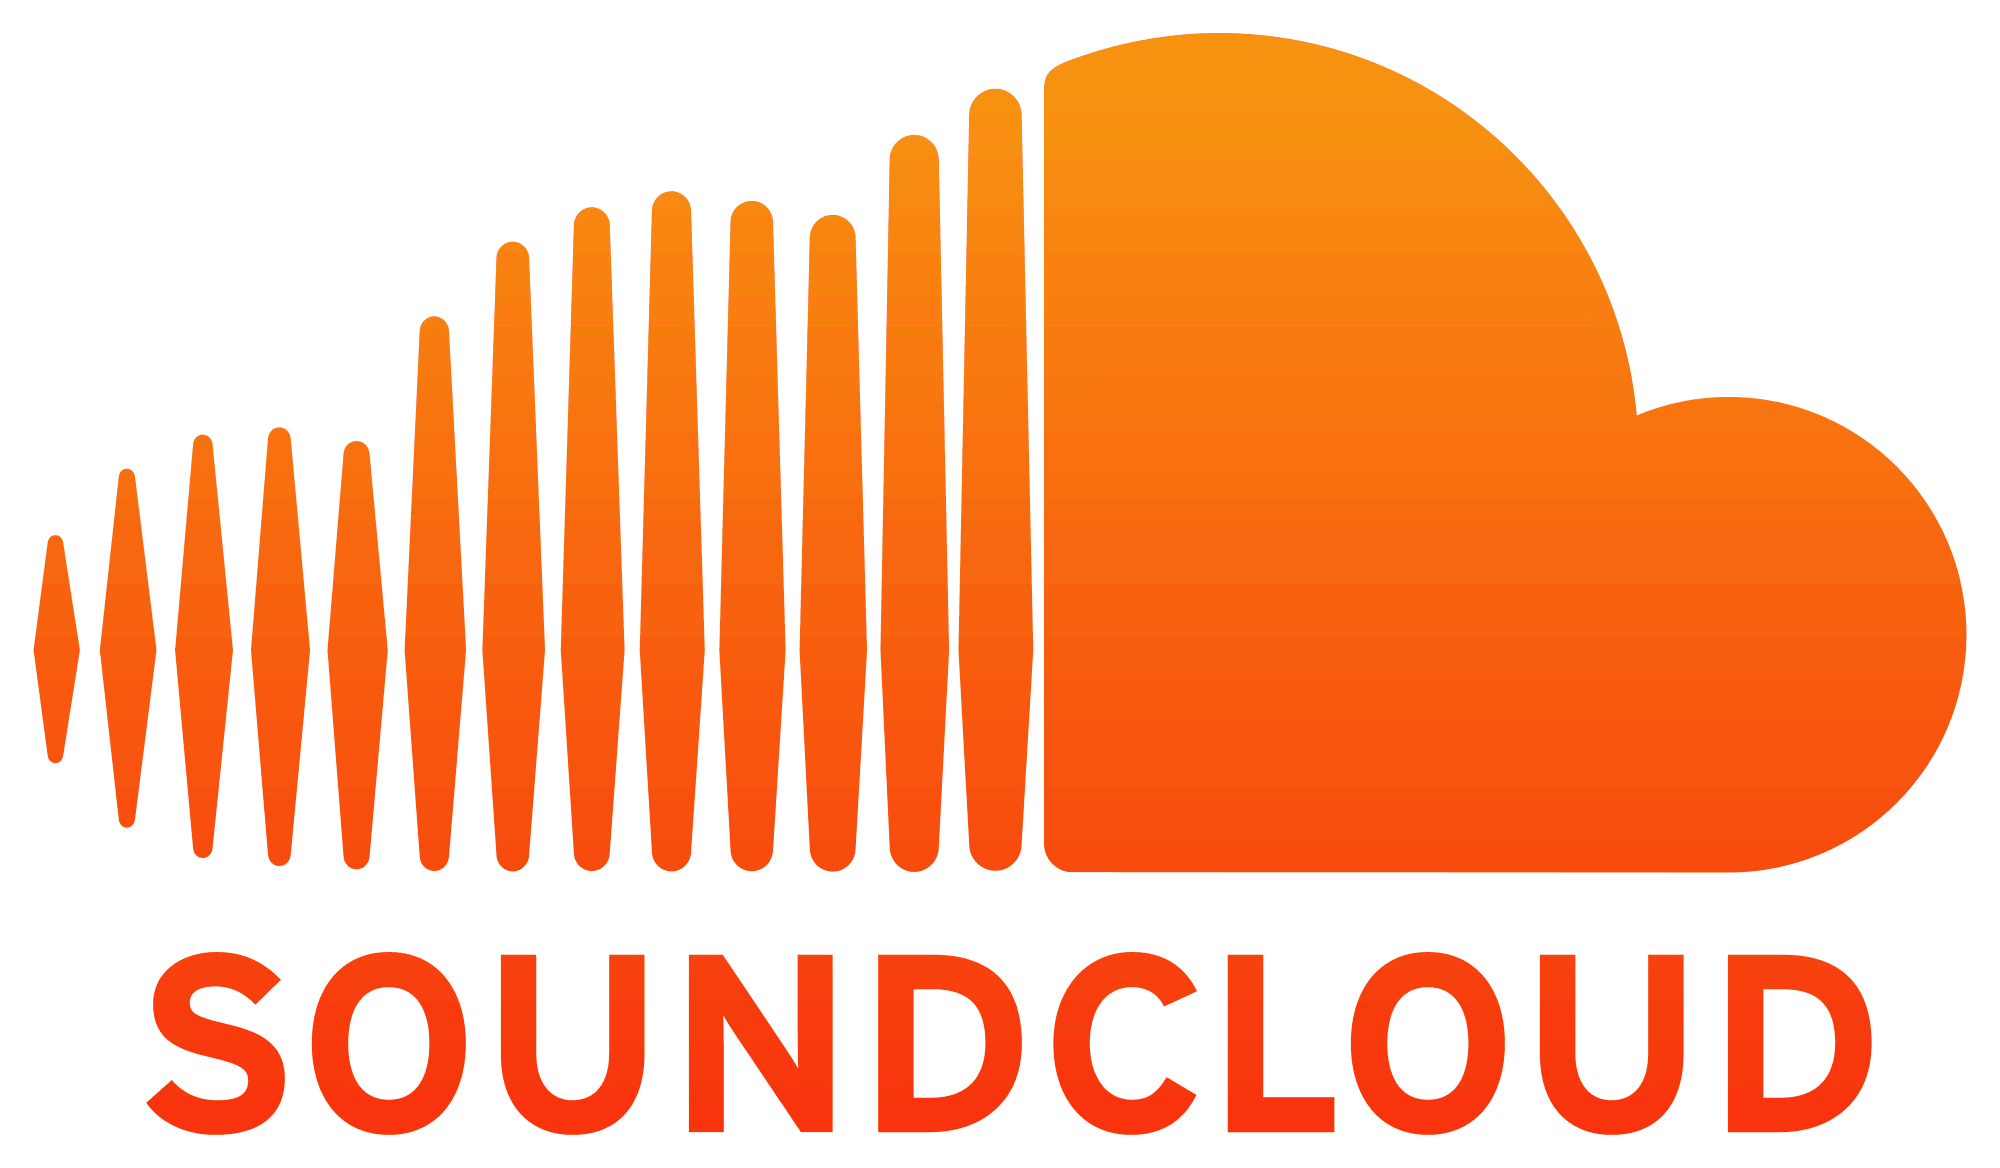 Soundcloud-logo